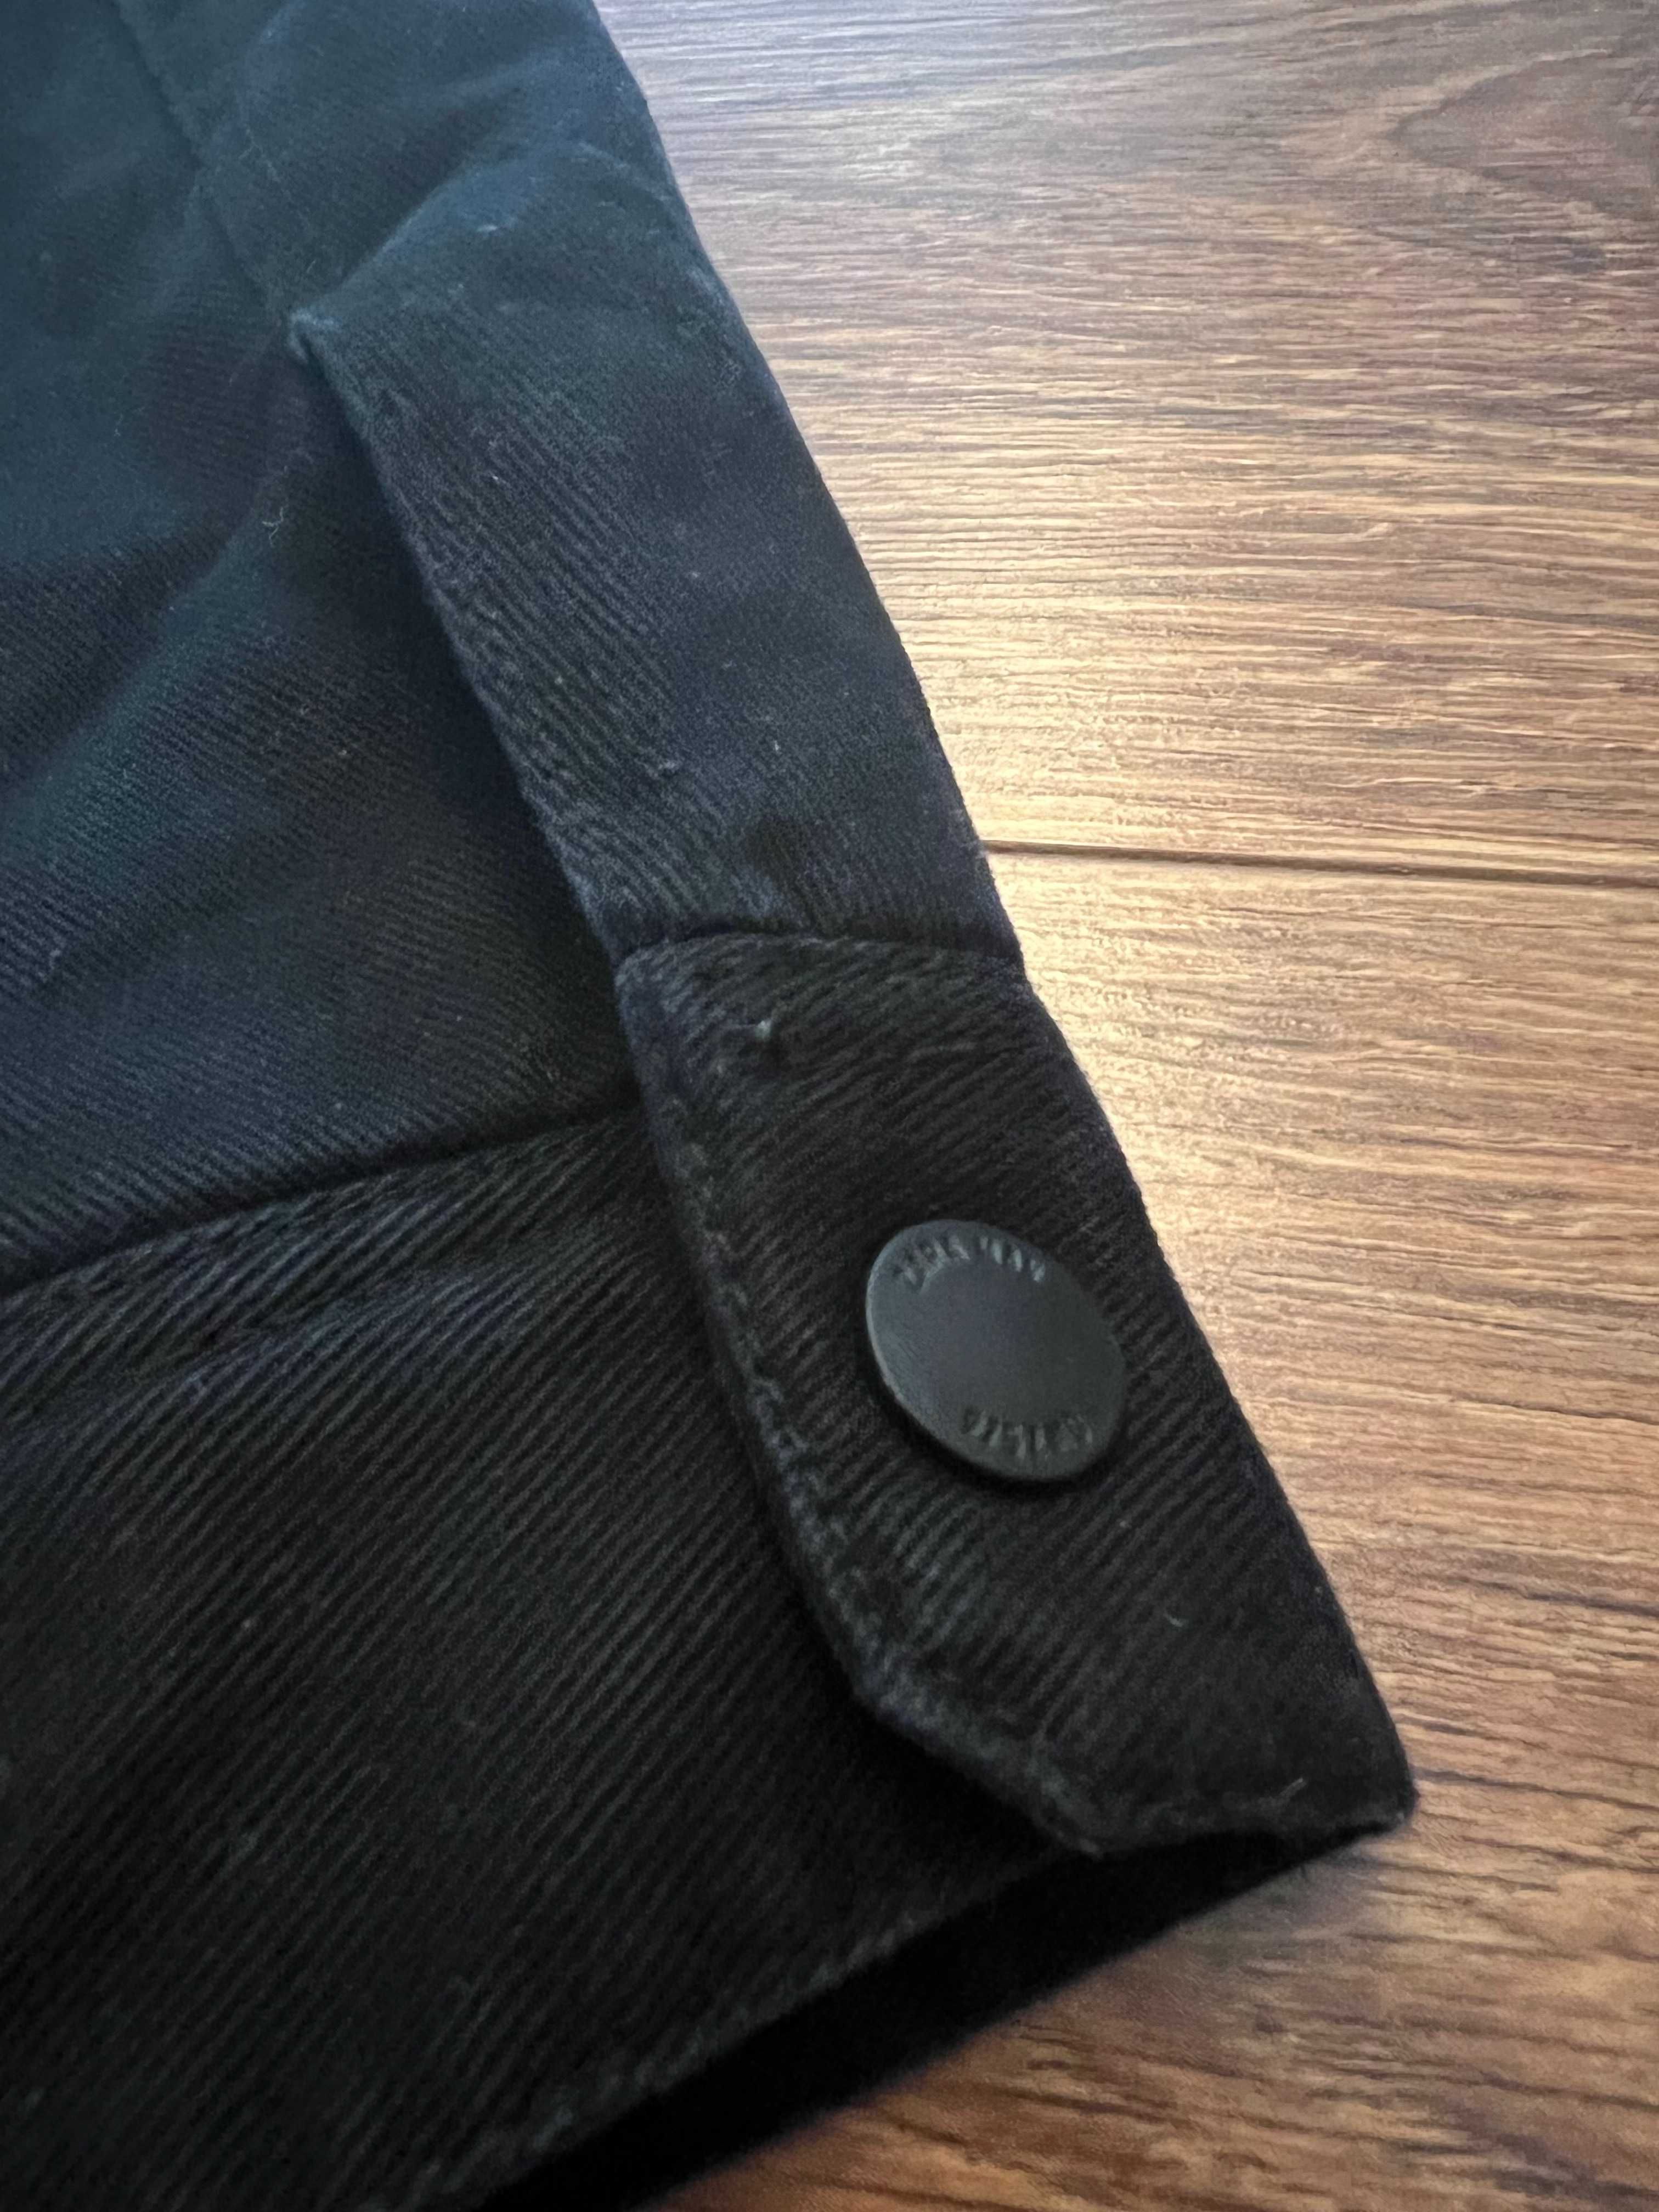 Kurtka jeansowa Zara, męska, czarna, rozmiar s, ocieplana